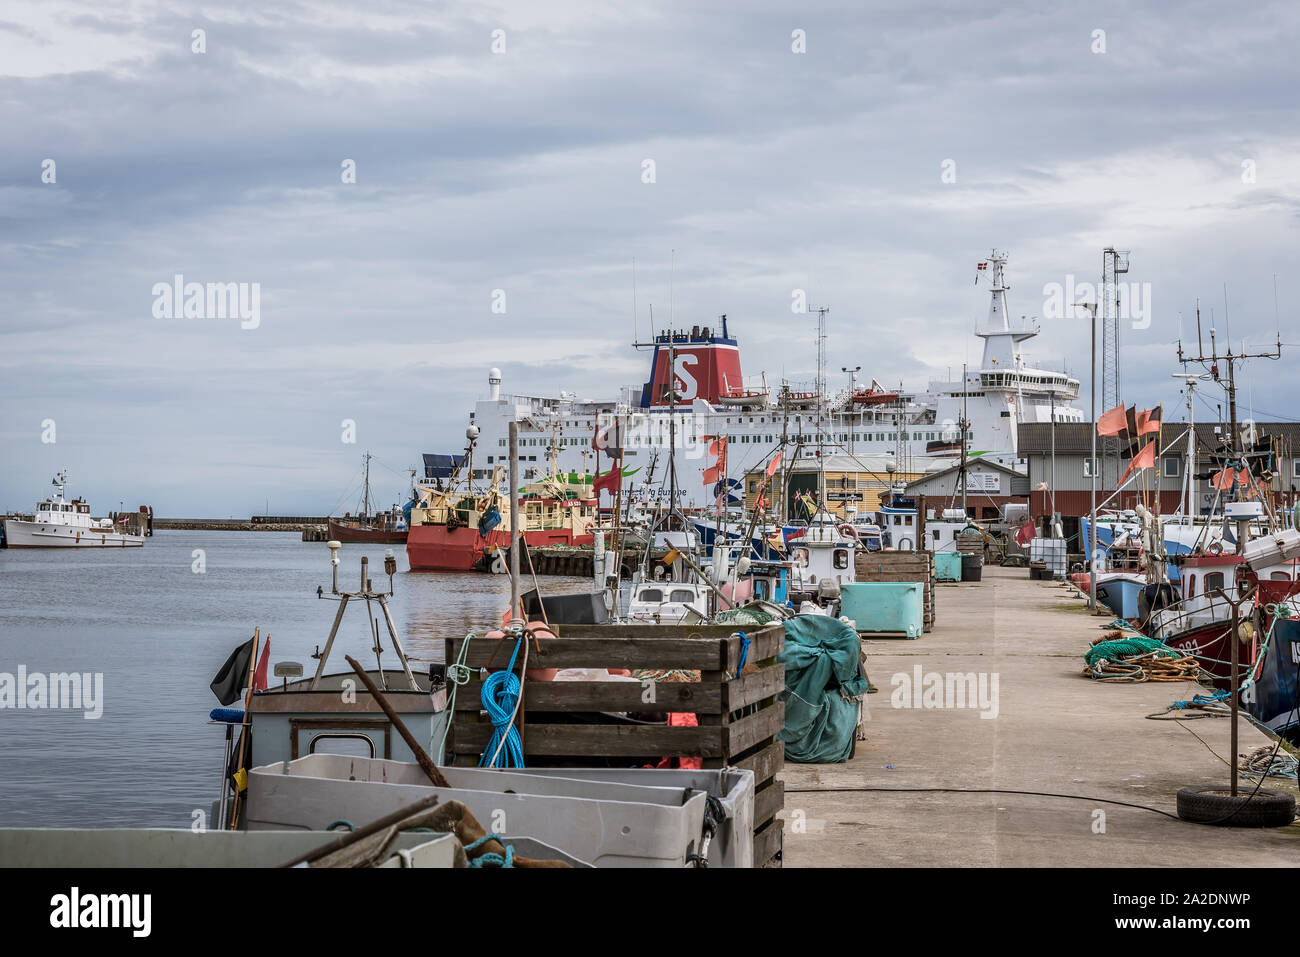 The car ferry Stena Nautika and fishing boats at the jetty of Grenaa, Denmark, September 6, 2019 Stock Photo